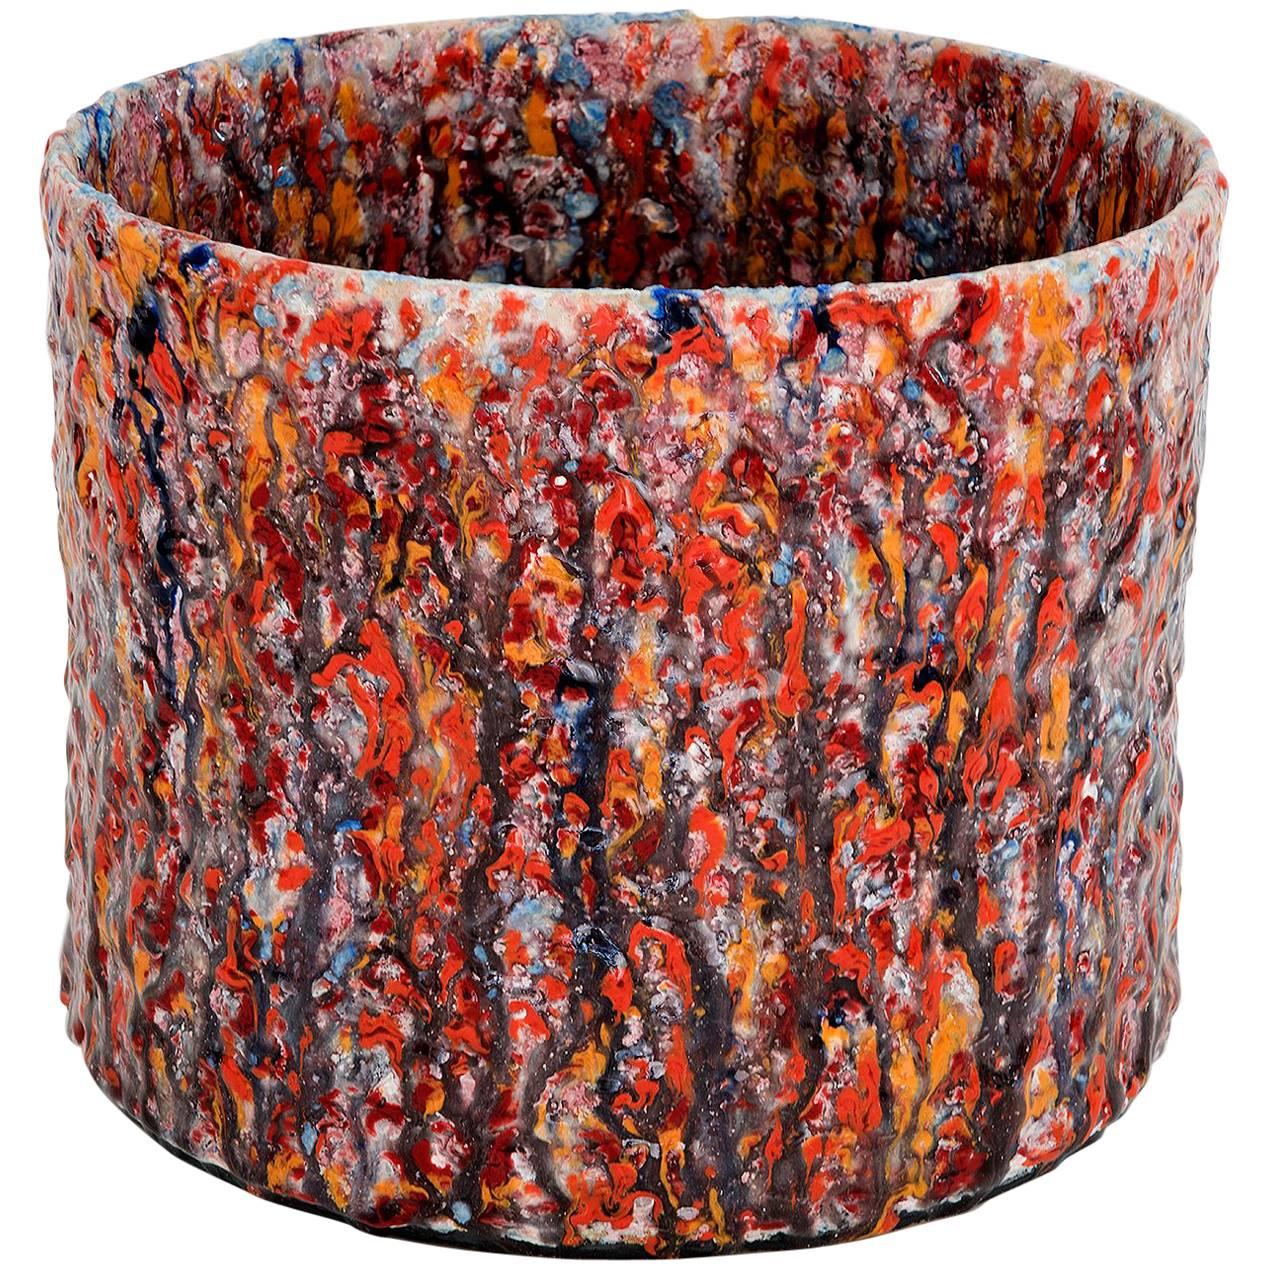 Vaso contemporaneo in ceramica testurizzata rossa modello "#1914" di Morten Løbner Espersen in vendita